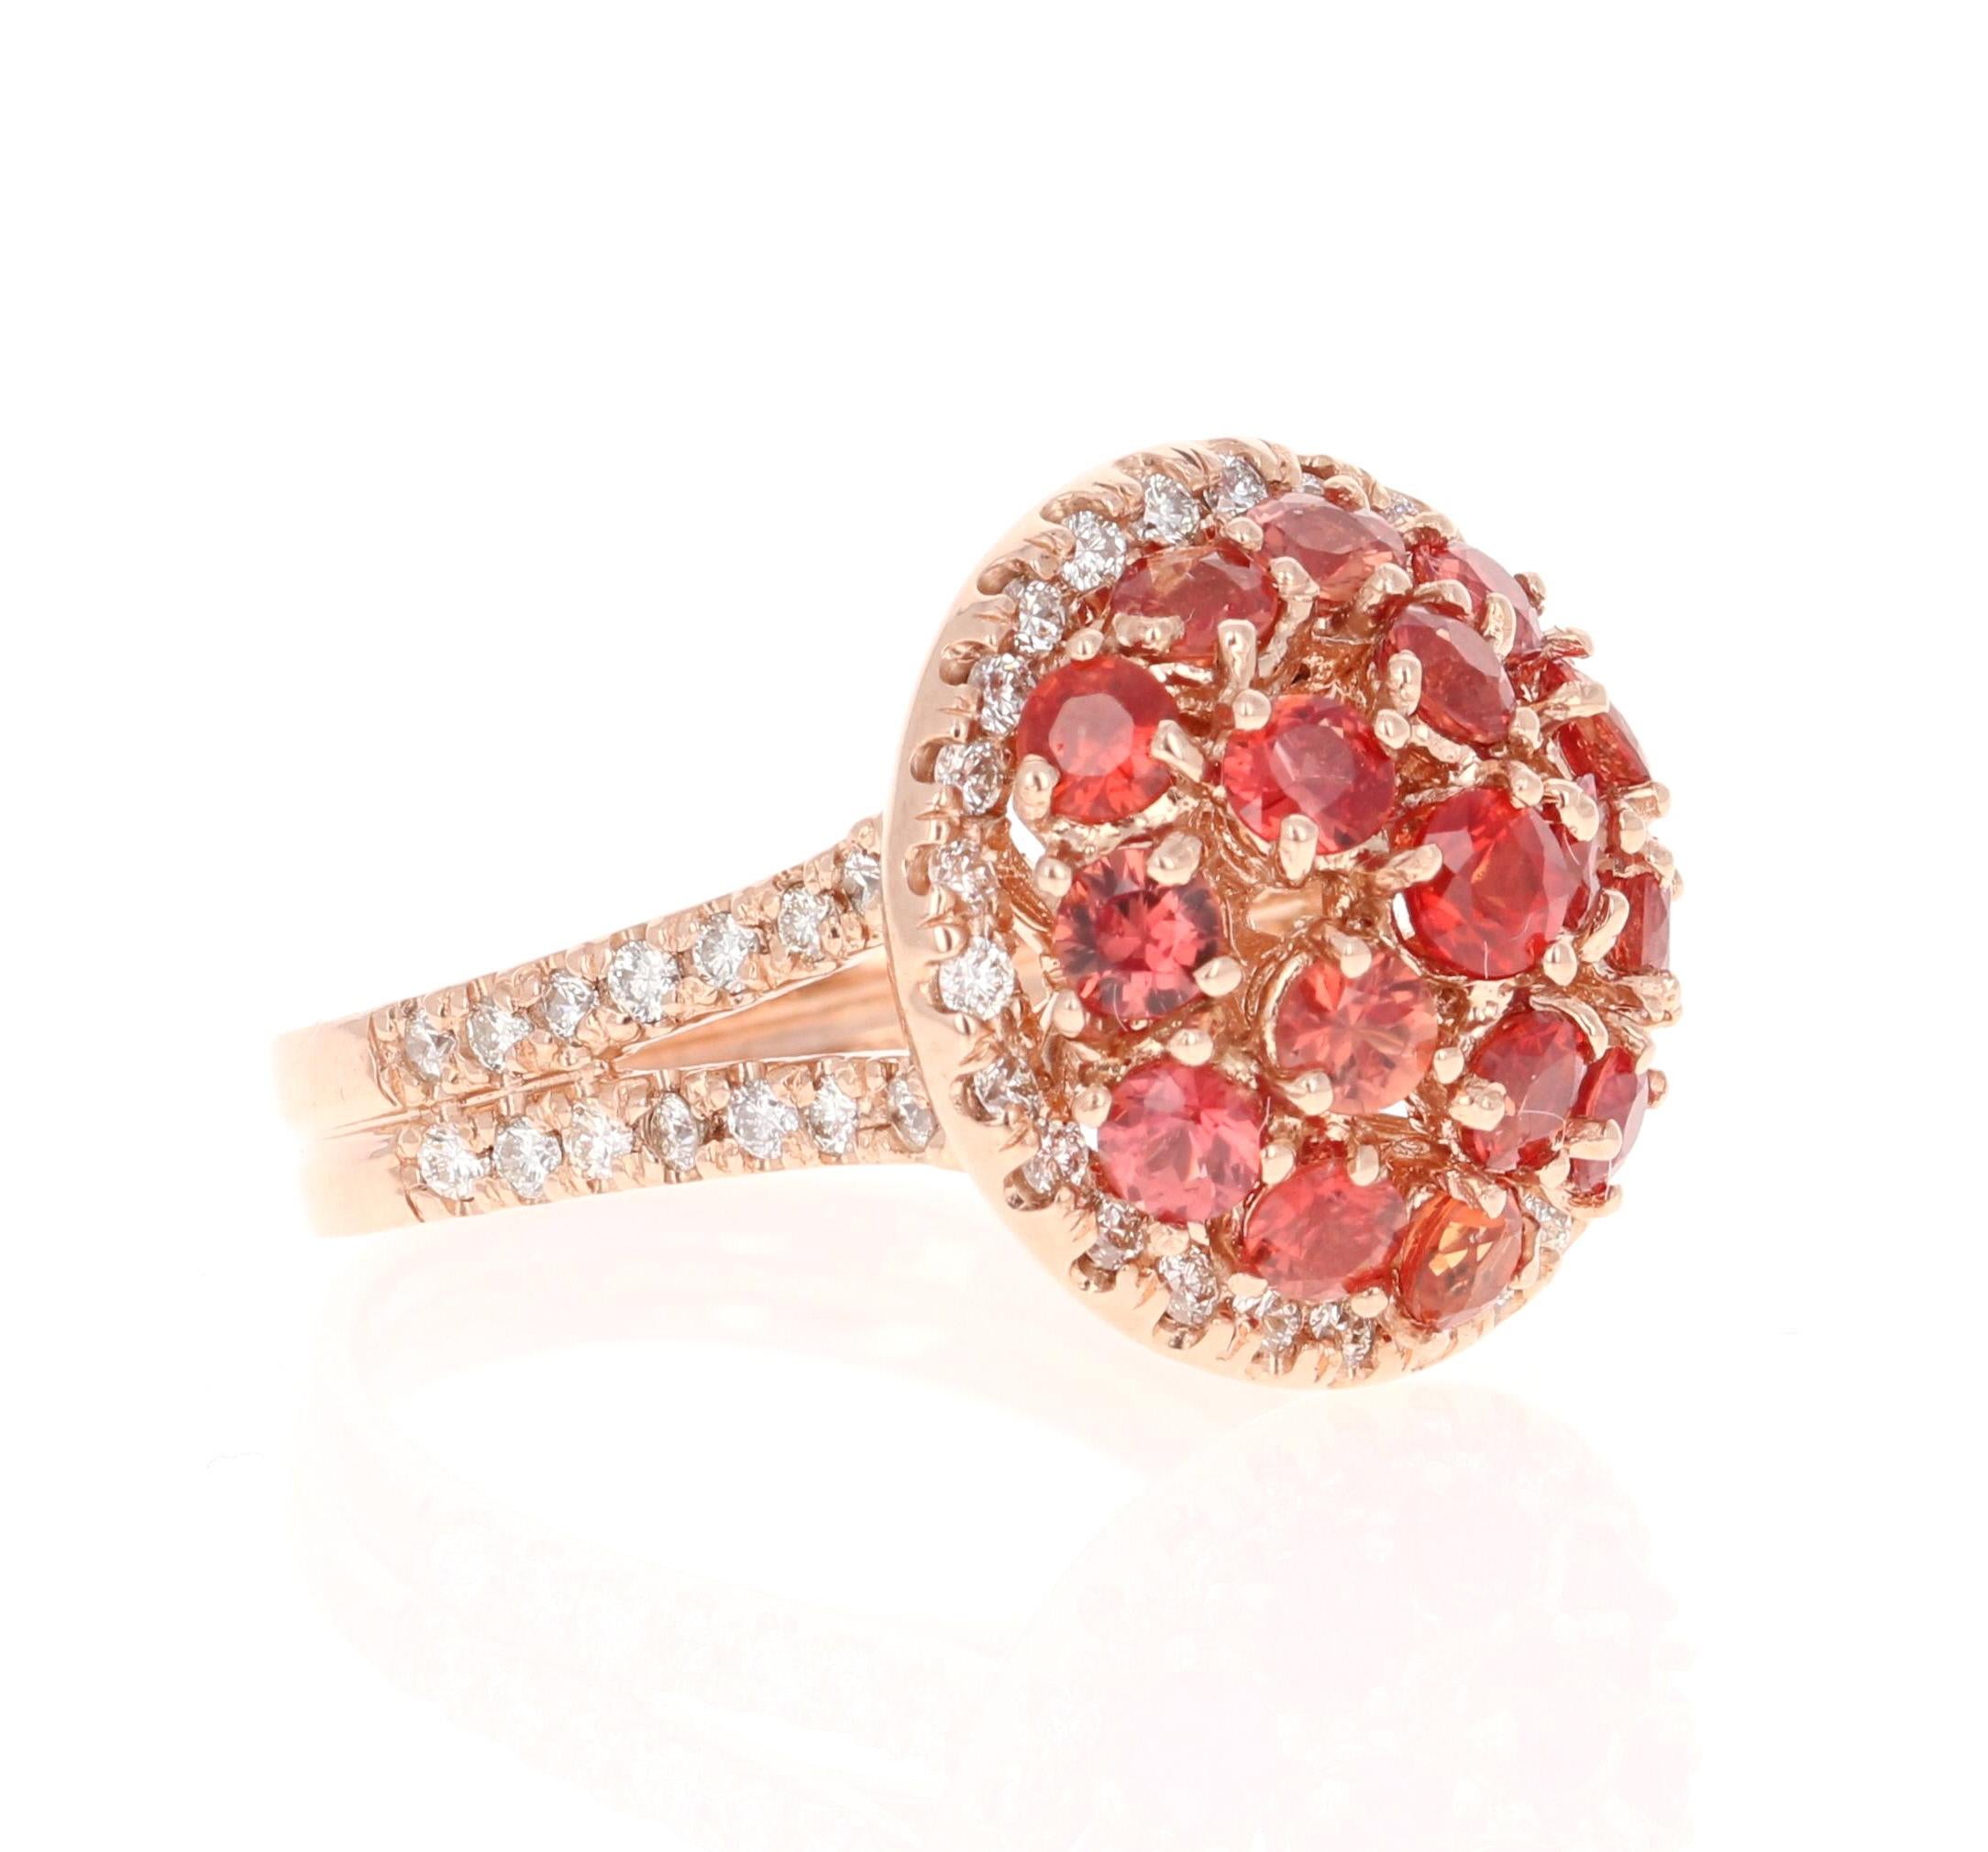 Dieser schöne Ring hat Rundschliff natürlichen roten Saphiren, die 2,17 Karat wiegen. Er hat 58 natürliche Diamanten im Rundschliff mit einem Gewicht von 0,70 Karat. (Reinheit: VS, Farbe: H) Das Gesamtkaratgewicht des Rings beträgt 2.87 Karat.